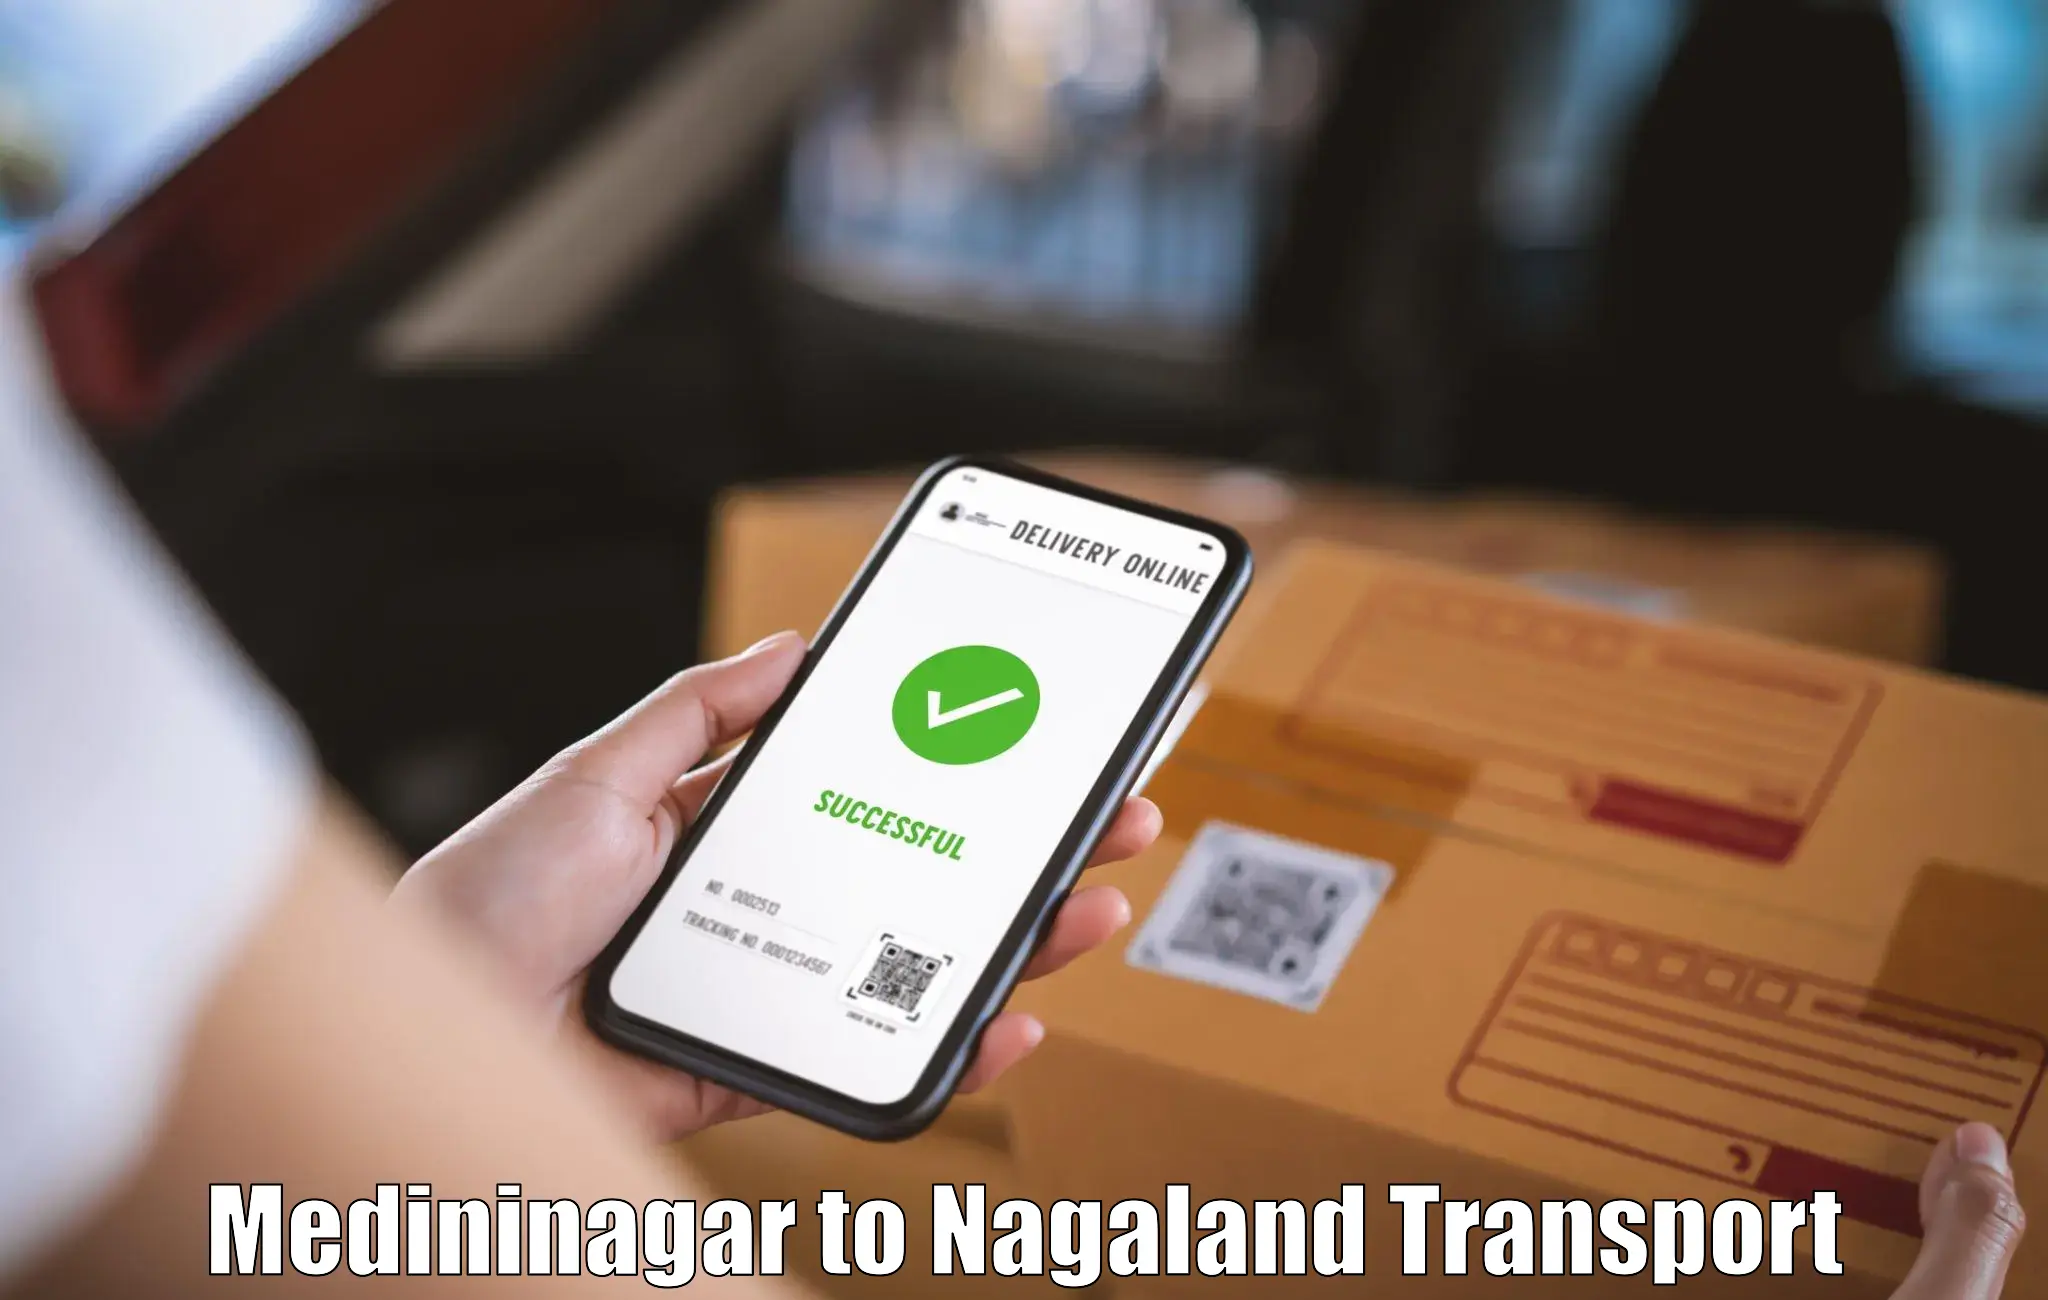 Nearest transport service Medininagar to Nagaland